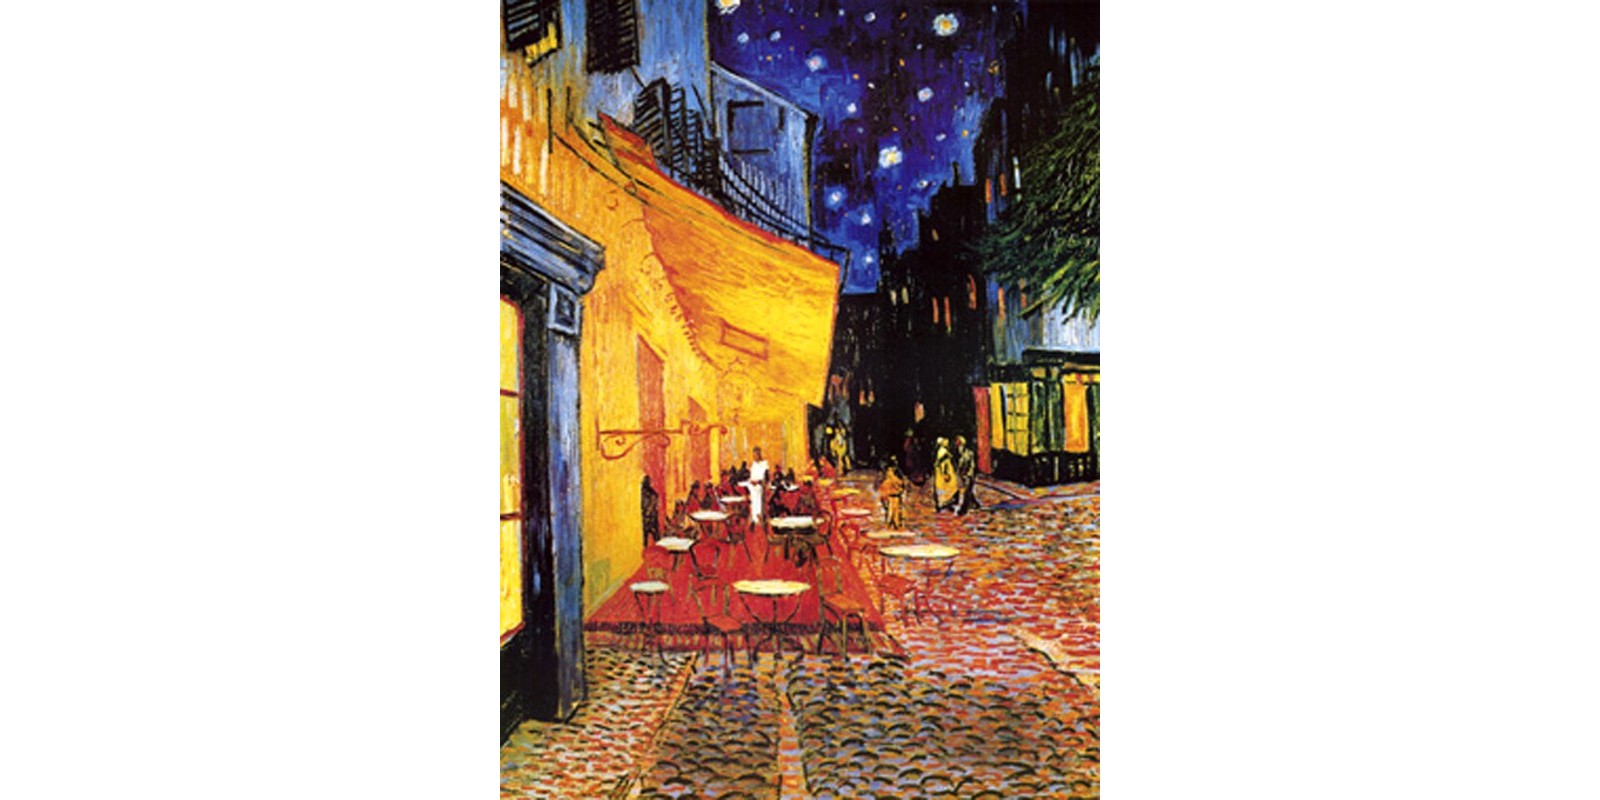 Vincent Van Gogh - Terazza del Caffe